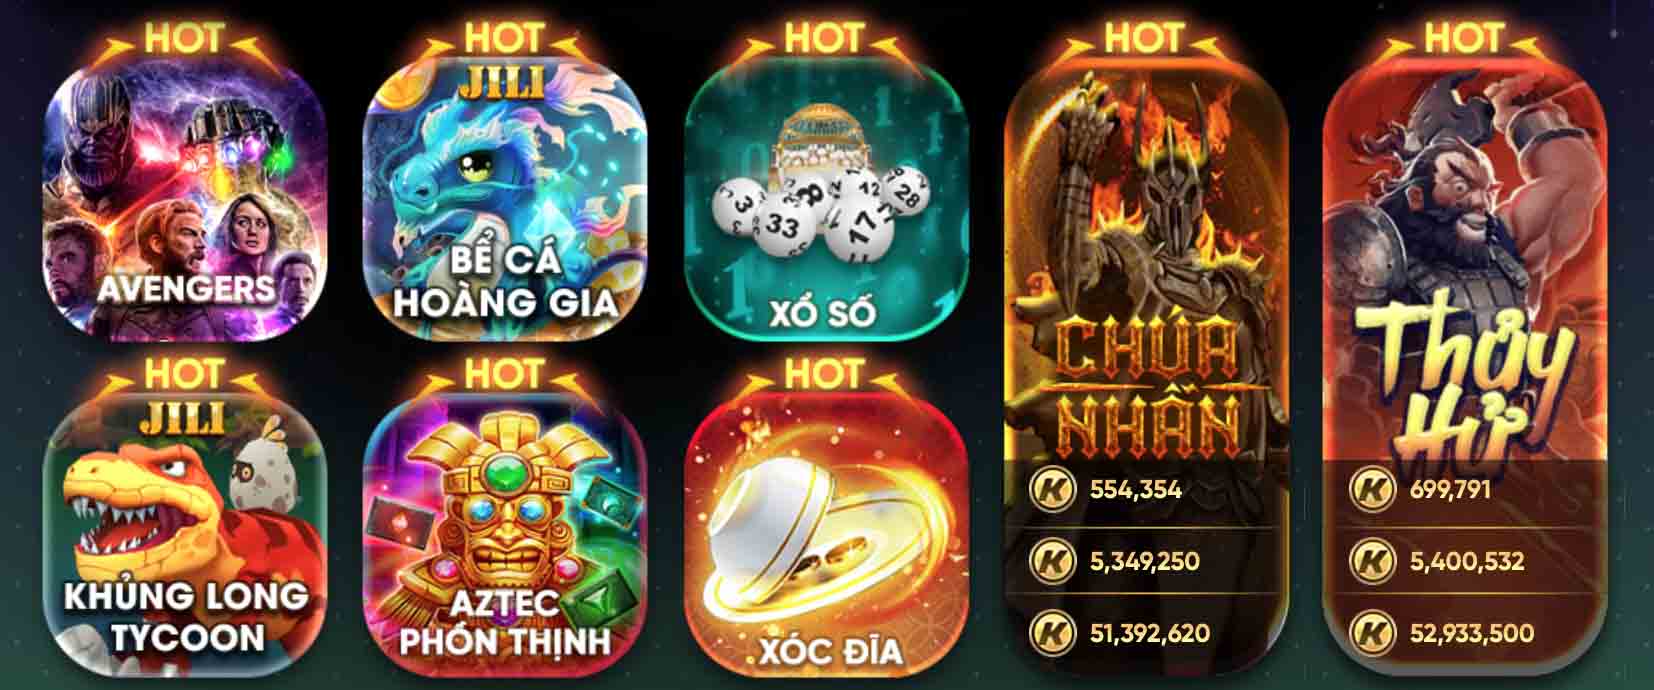 Tìm hiểu chi tiết nhất về Slot game Xóc đĩa Kingfun